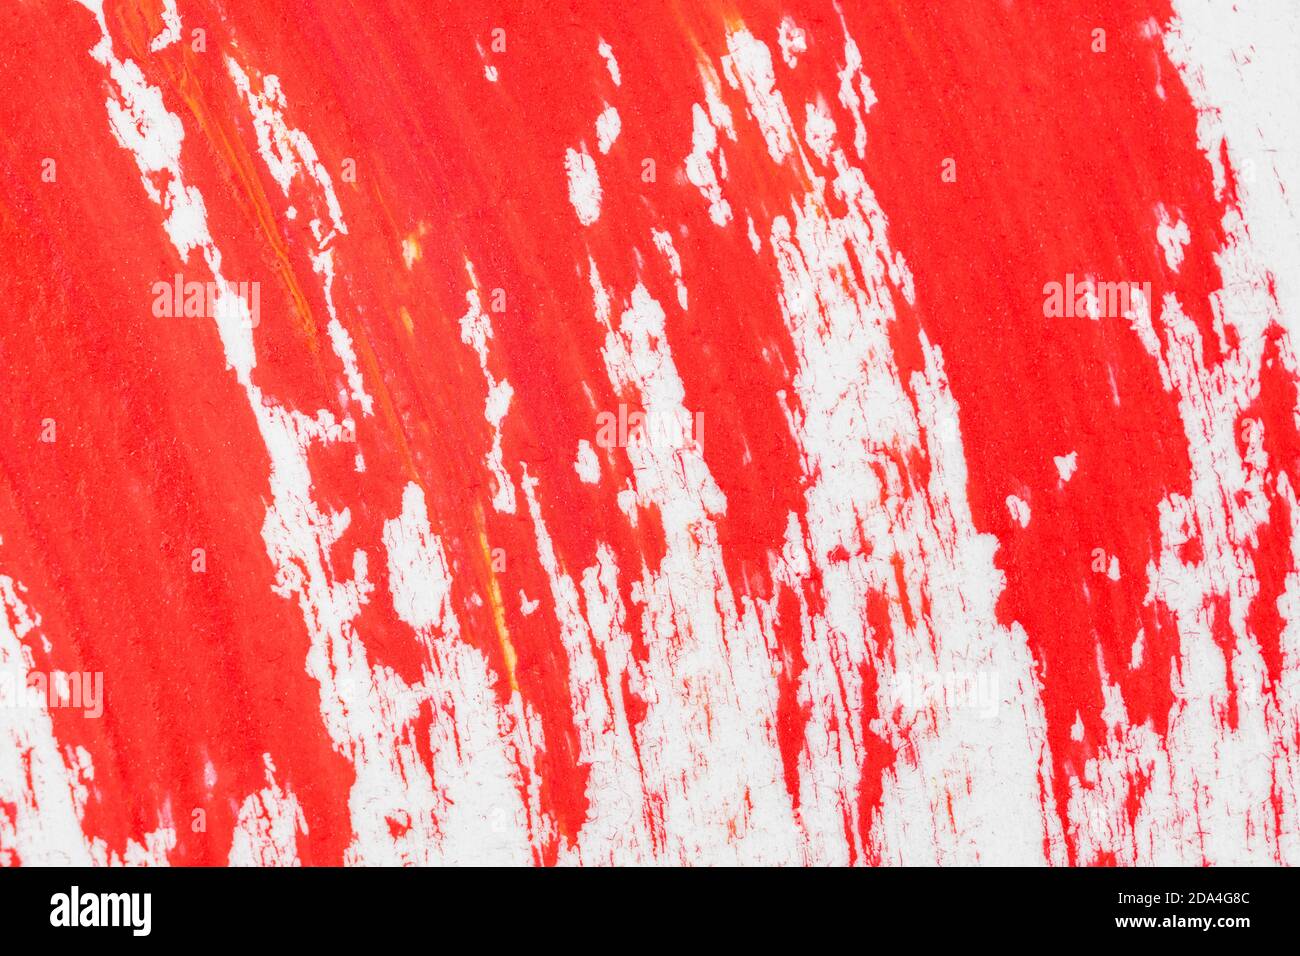 Makro-/Nahaufnahme von lebhaft rot-wirbelnden Pinselstrichen auf strukturiertem „Kunstpapier“. Dachte, dies könnte einen nützlichen Hintergrund für jemanden machen. Stockfoto